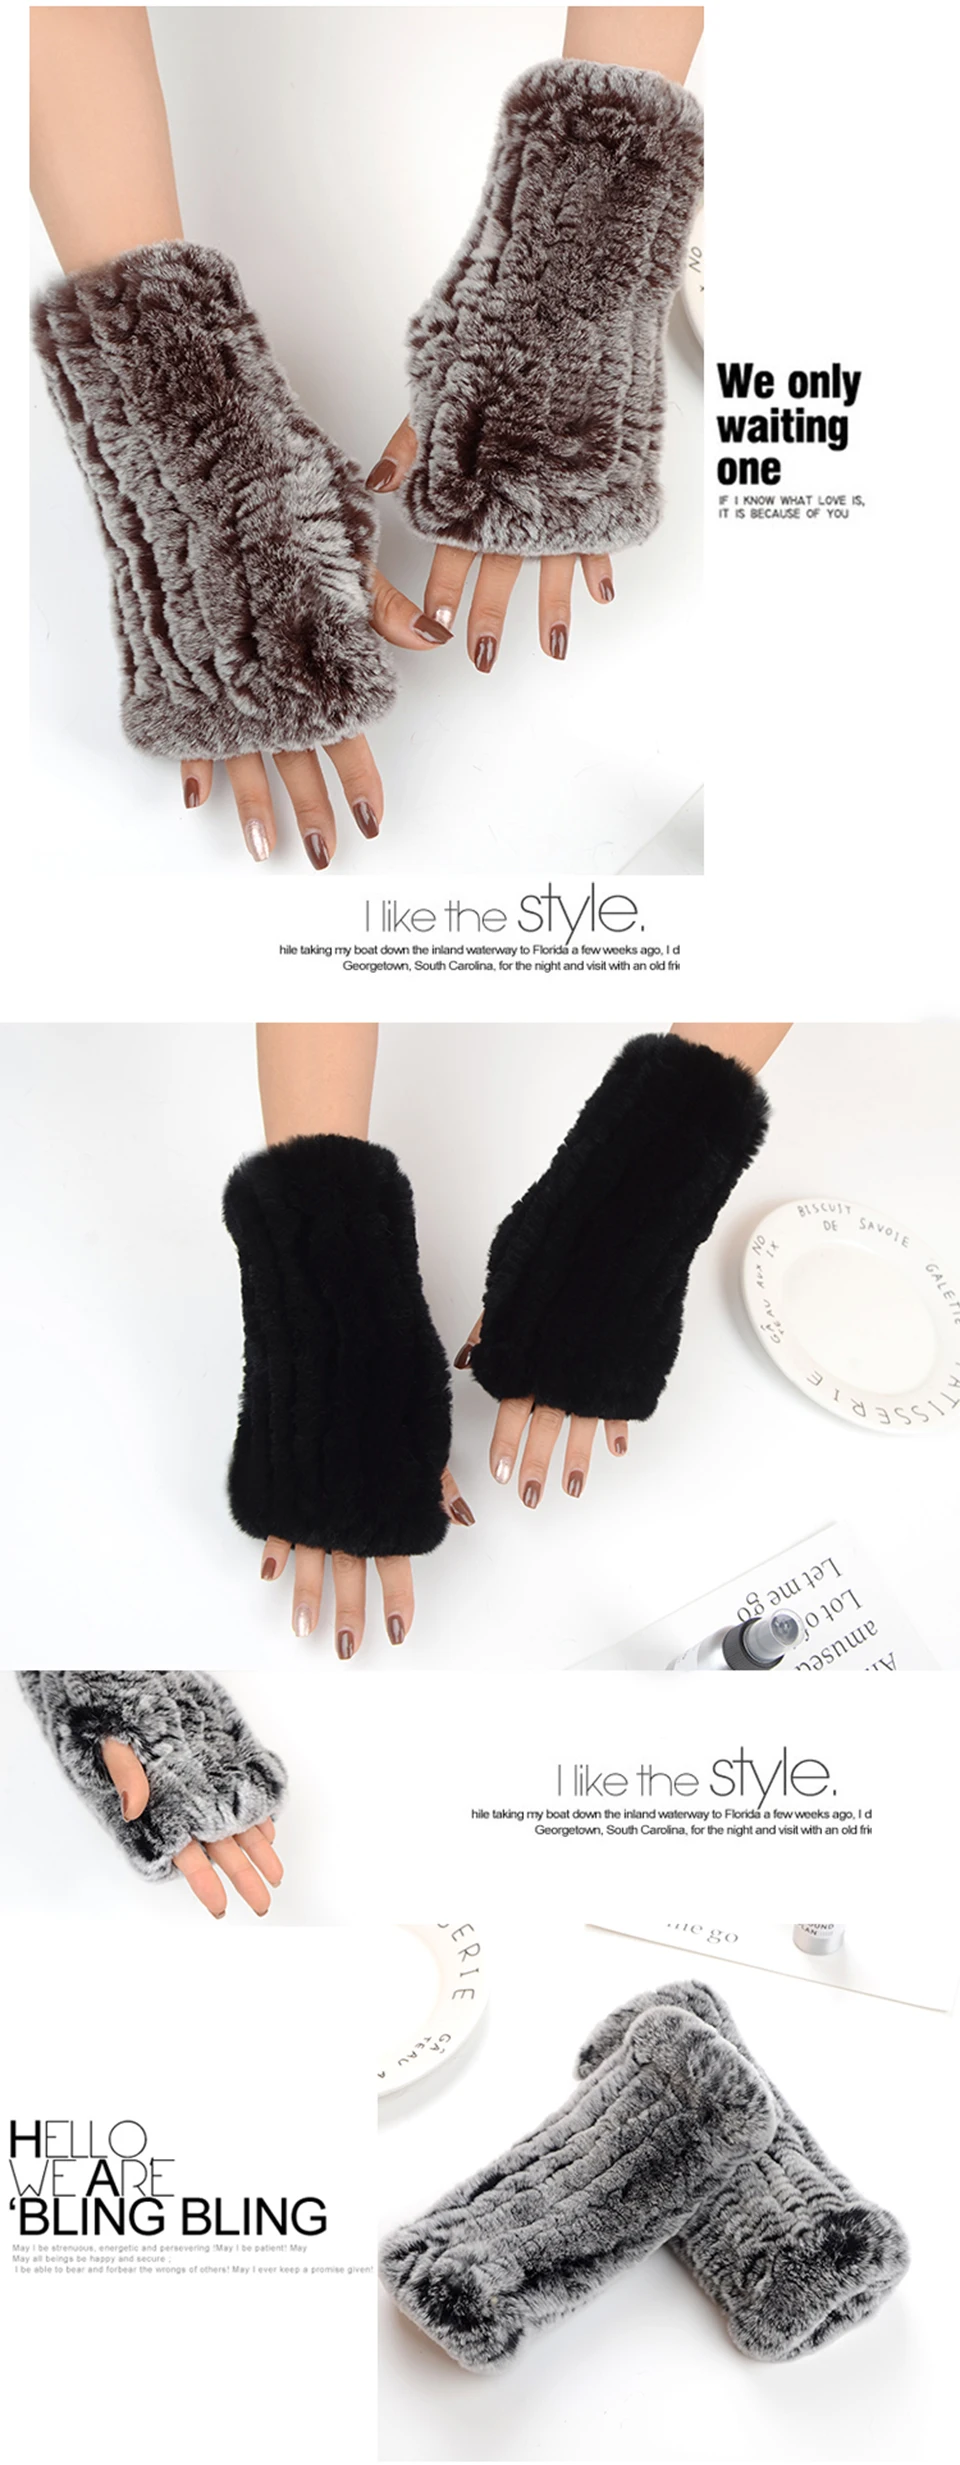 2017 брендовые перчатки женские вязаные варежки модные зимние перчатки женские кроличий мех теплые перчатки 8 цветов 100% натуральные меховые